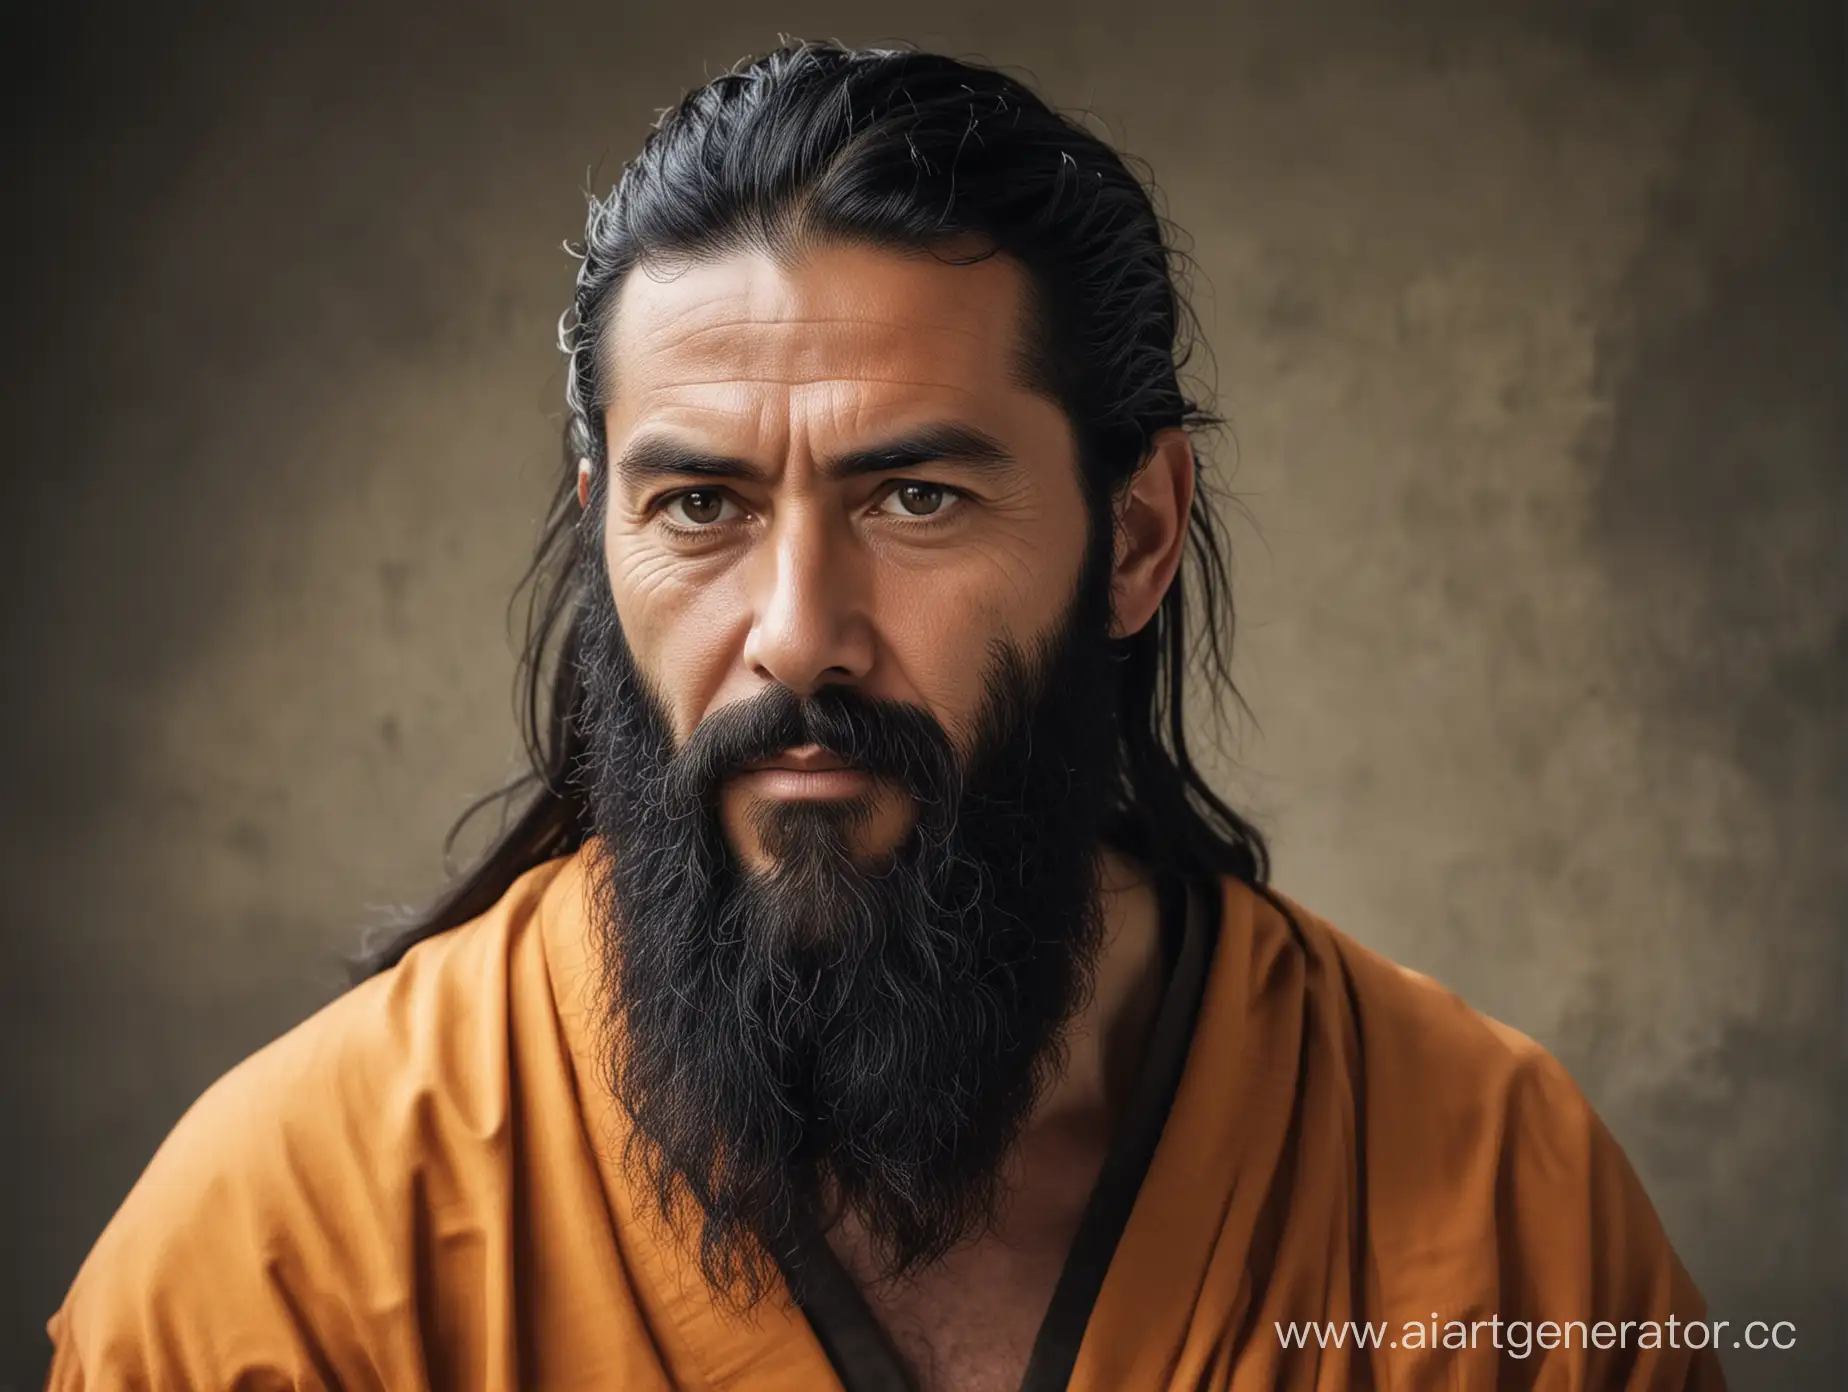 Мужчина лет 50, монах воин, с черной бородой и длинными волосами